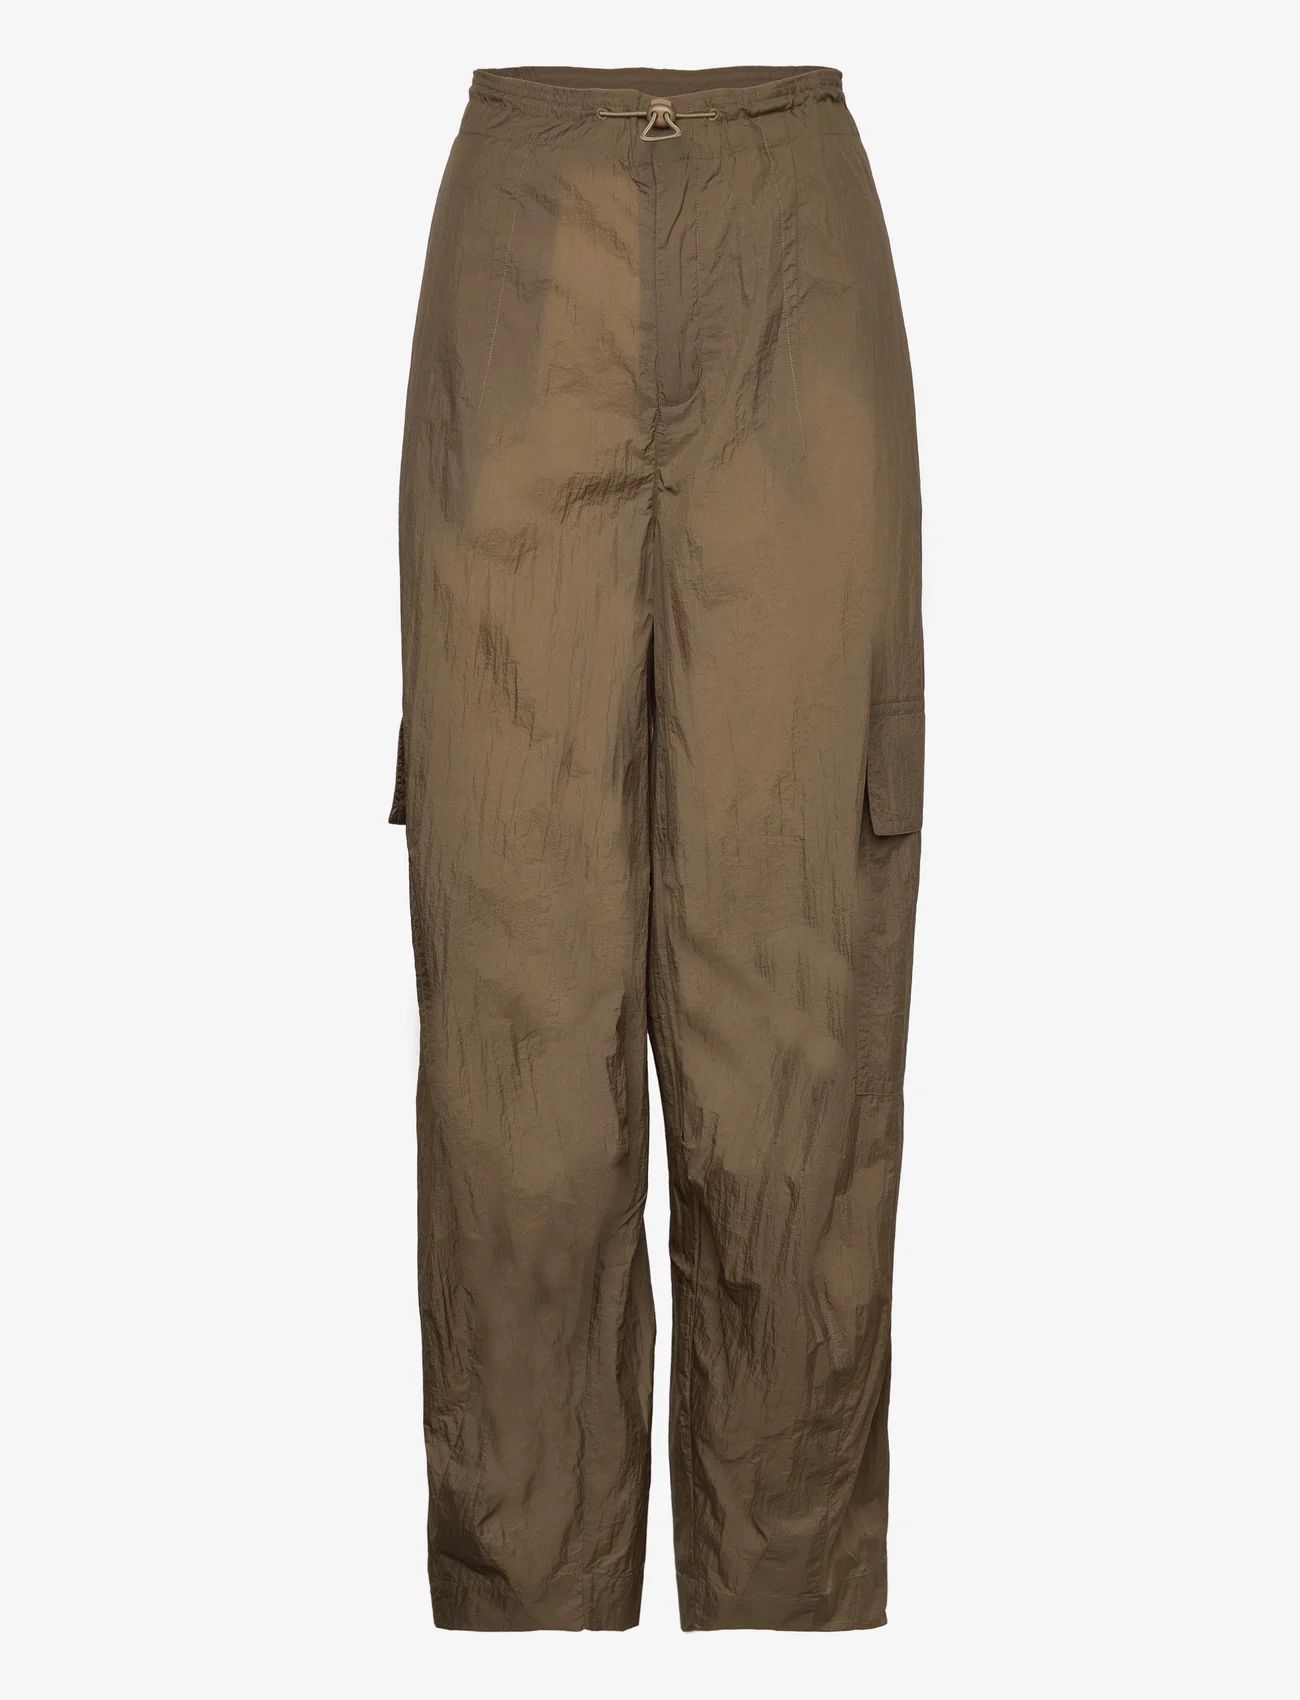 Hope - Cargo Trousers - spodnie cargo - dark khaki - 0